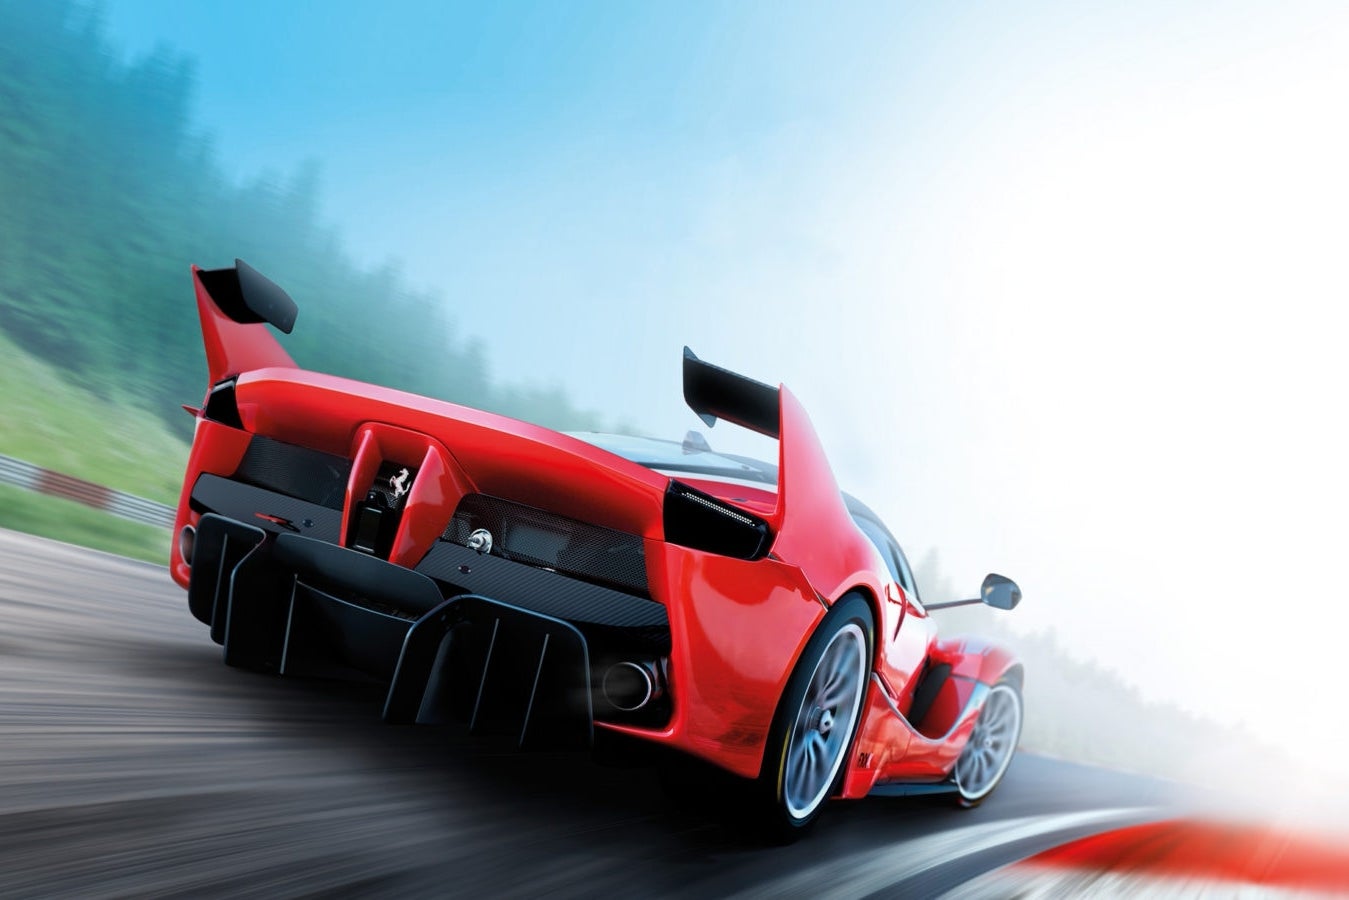 Immagine di Assetto Corsa: disponibile su Steam il nuovo Bonus Pack 3